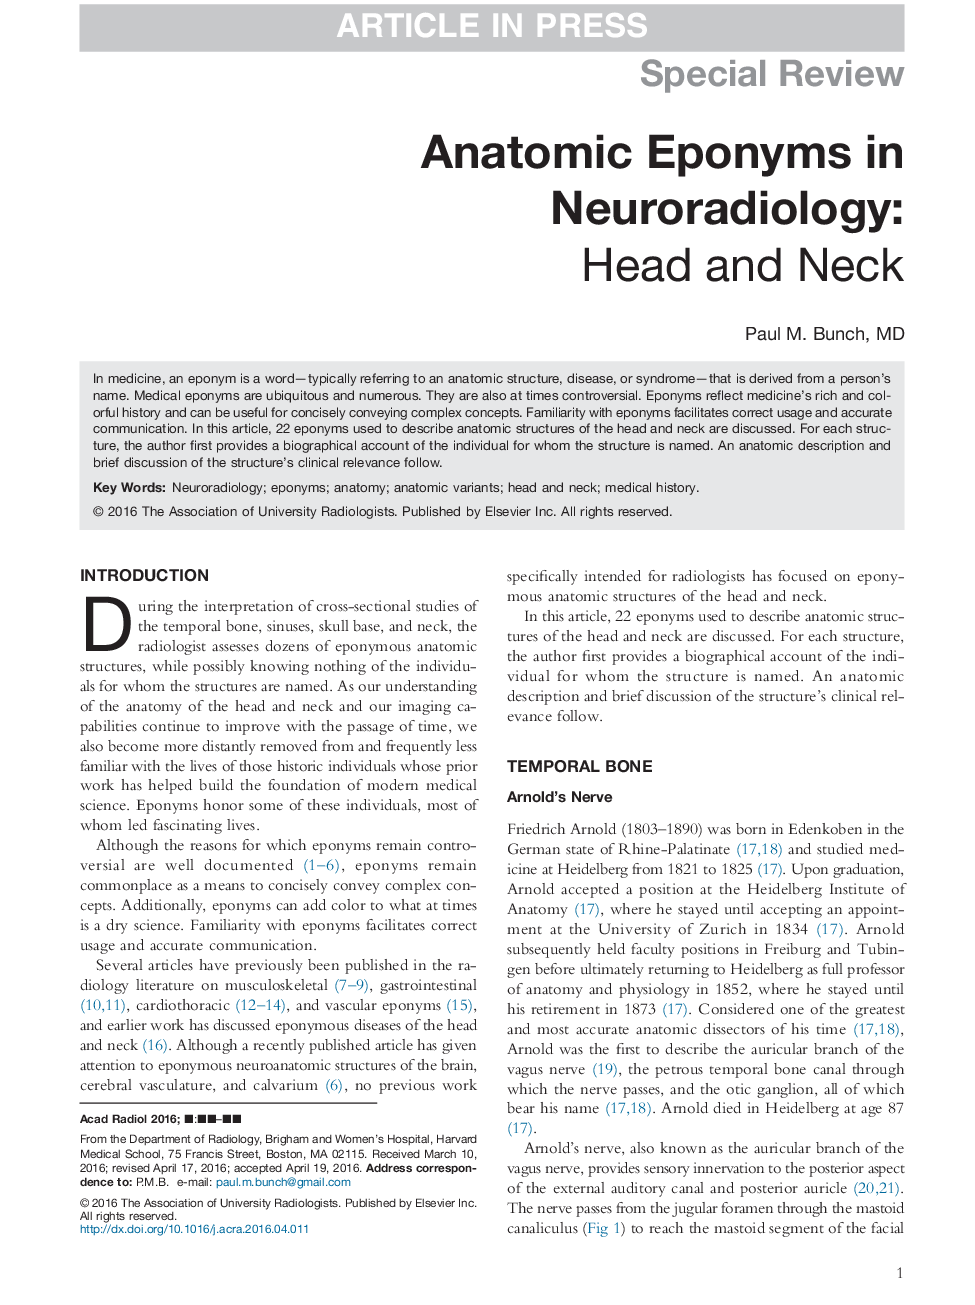 اپووم های آناتومیک در نوروآنتیولوژی 